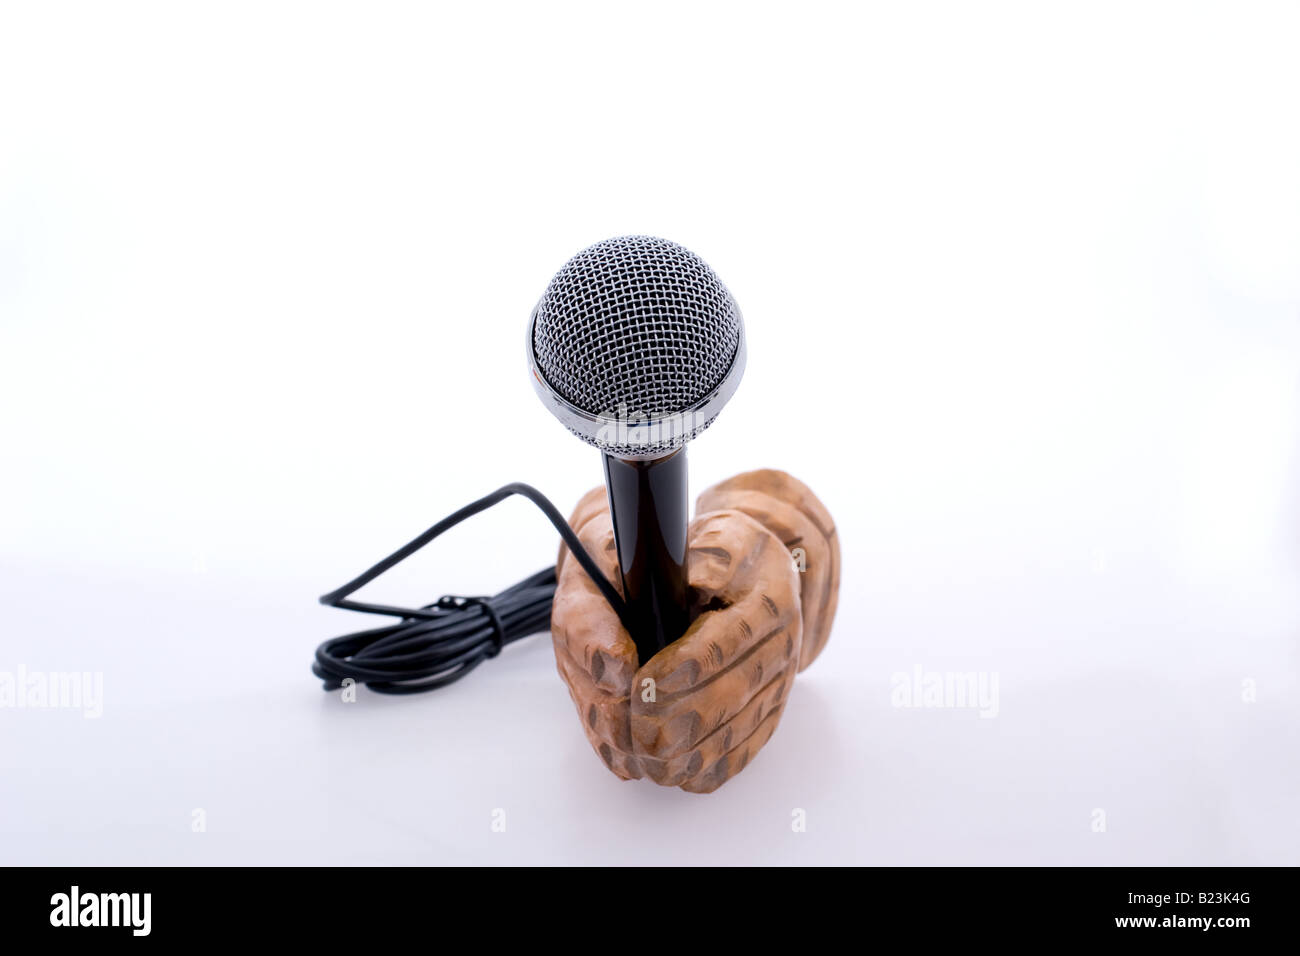 Manos de madera sosteniendo un micrófono a la vieja usanza Foto de stock